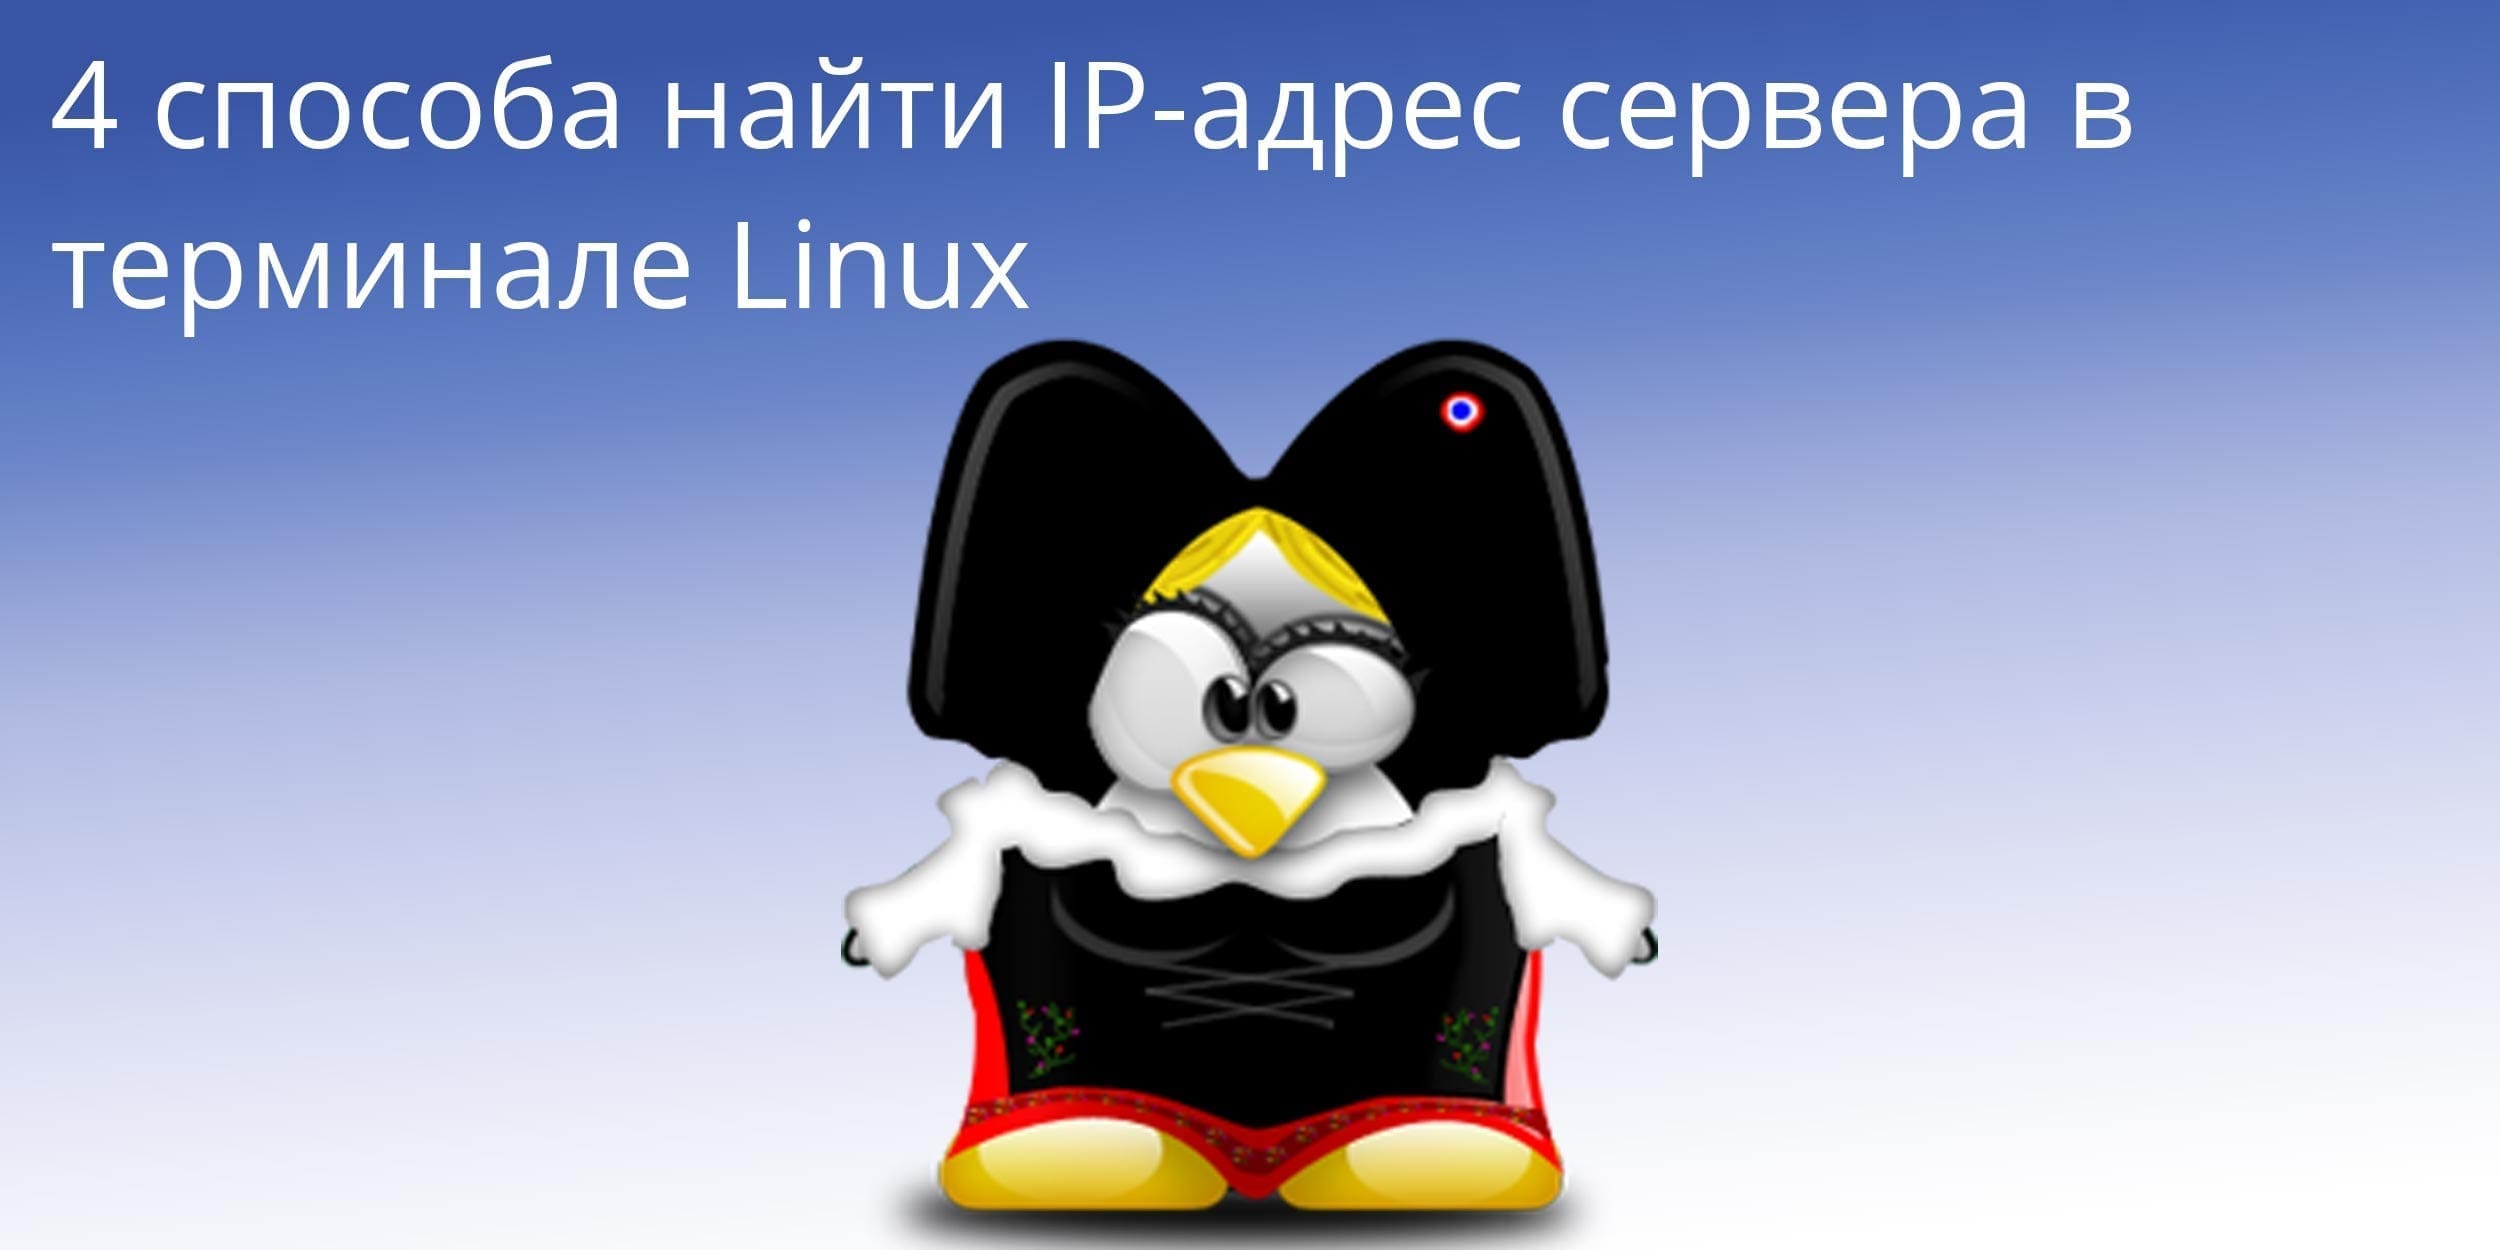 4 способа найти IP-адрес сервера в терминале Linux